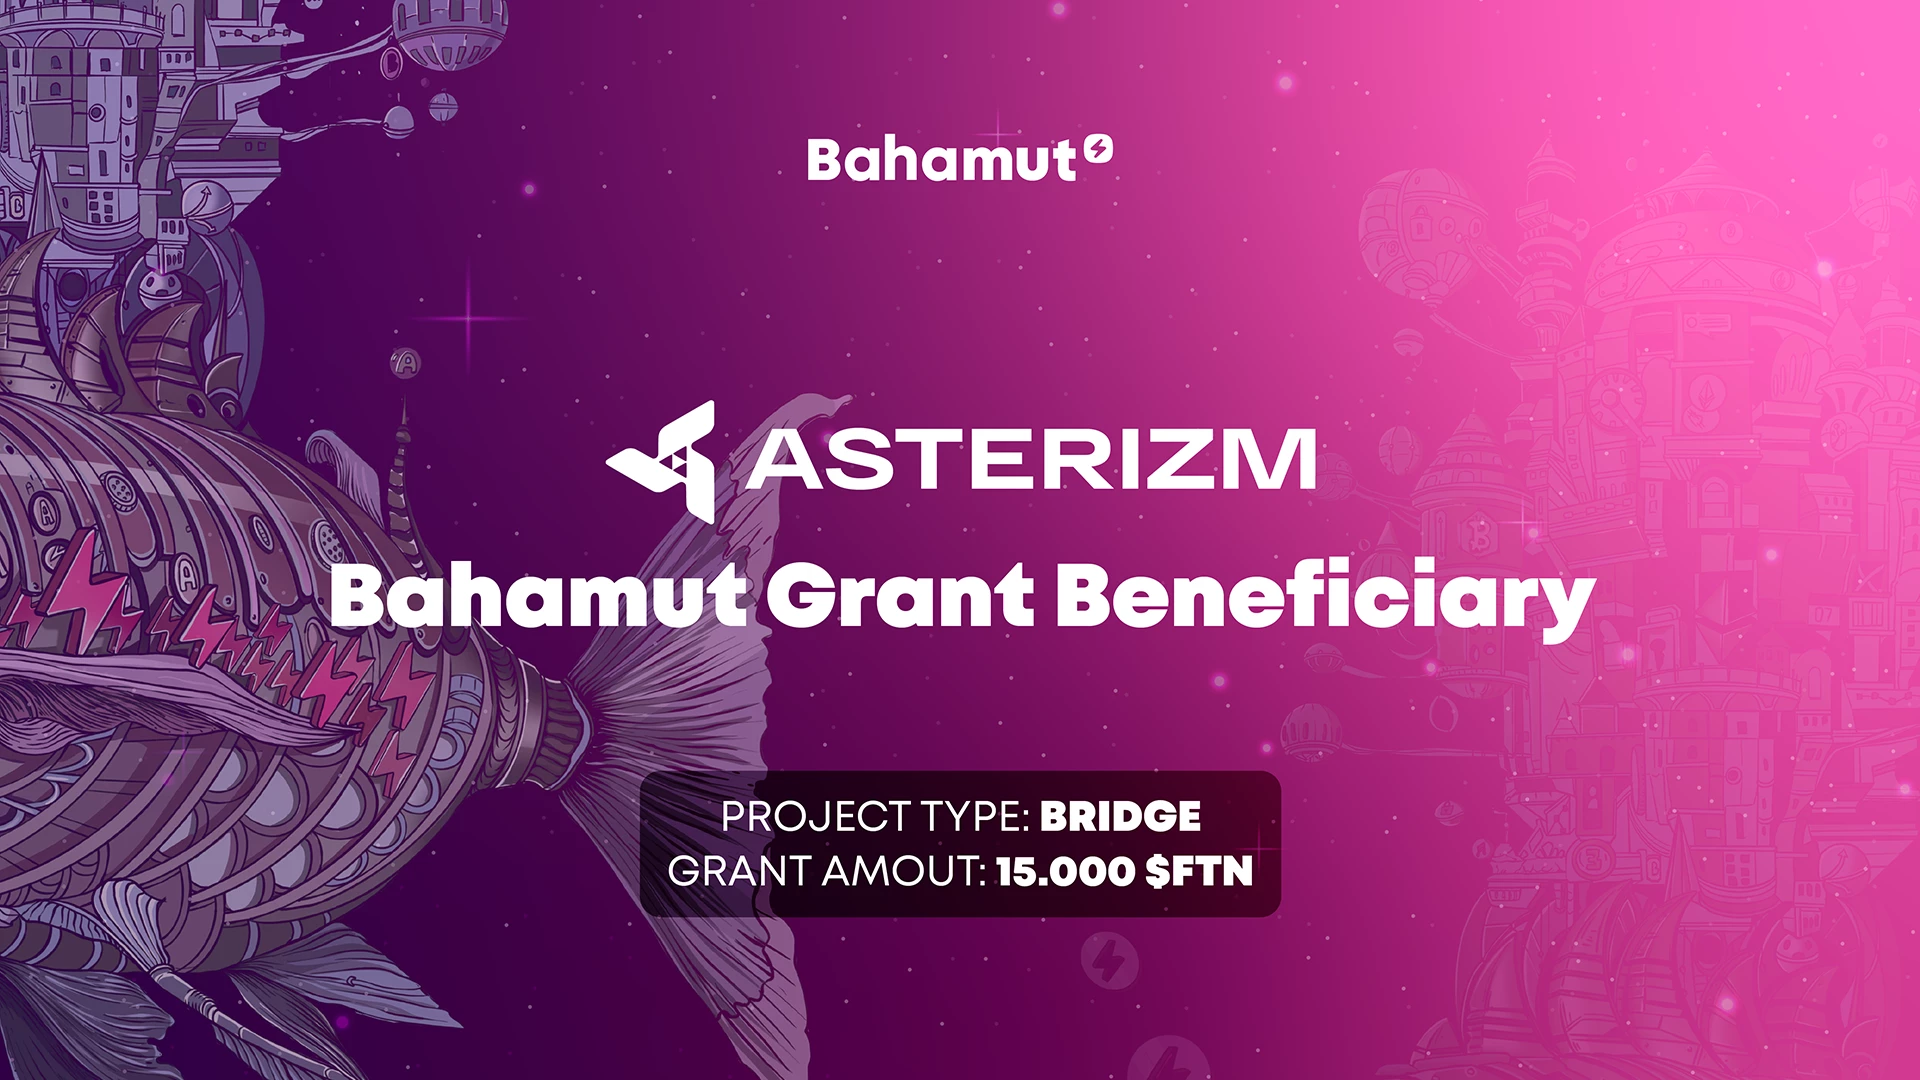 Asterizm est l'un des bénéficiaires de la subvention Bahamut